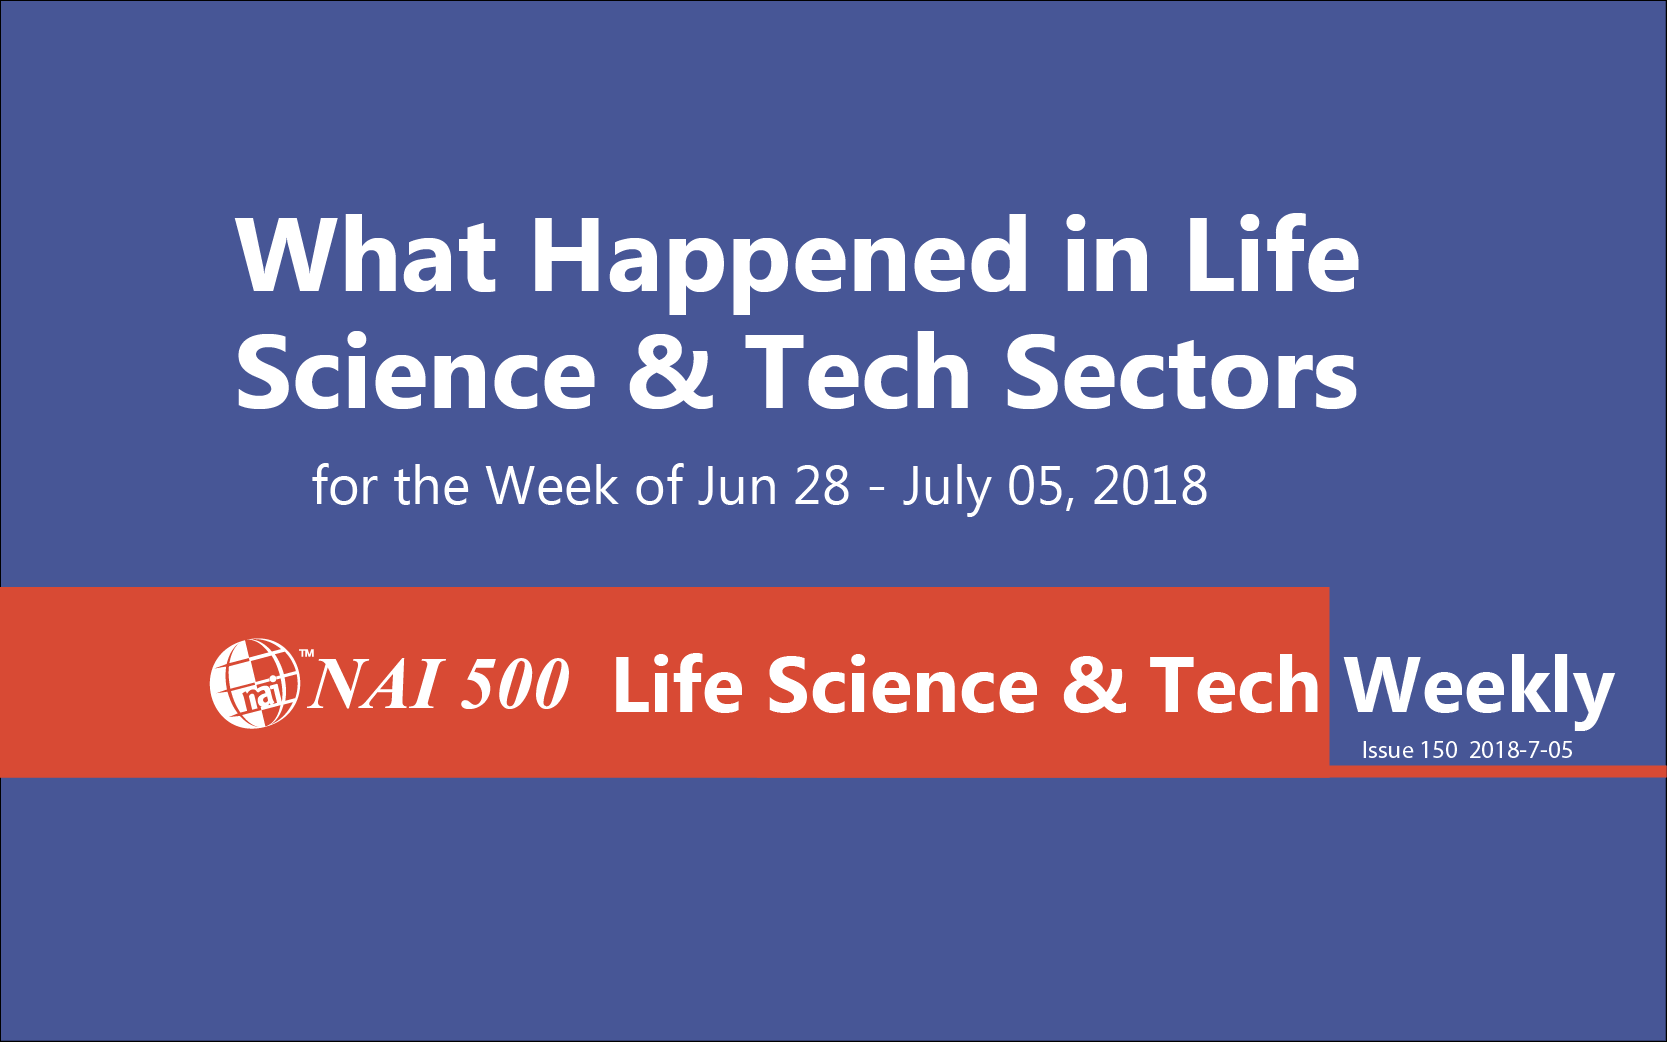 NAI Life Science & Technology Weekly - www.nai500.com